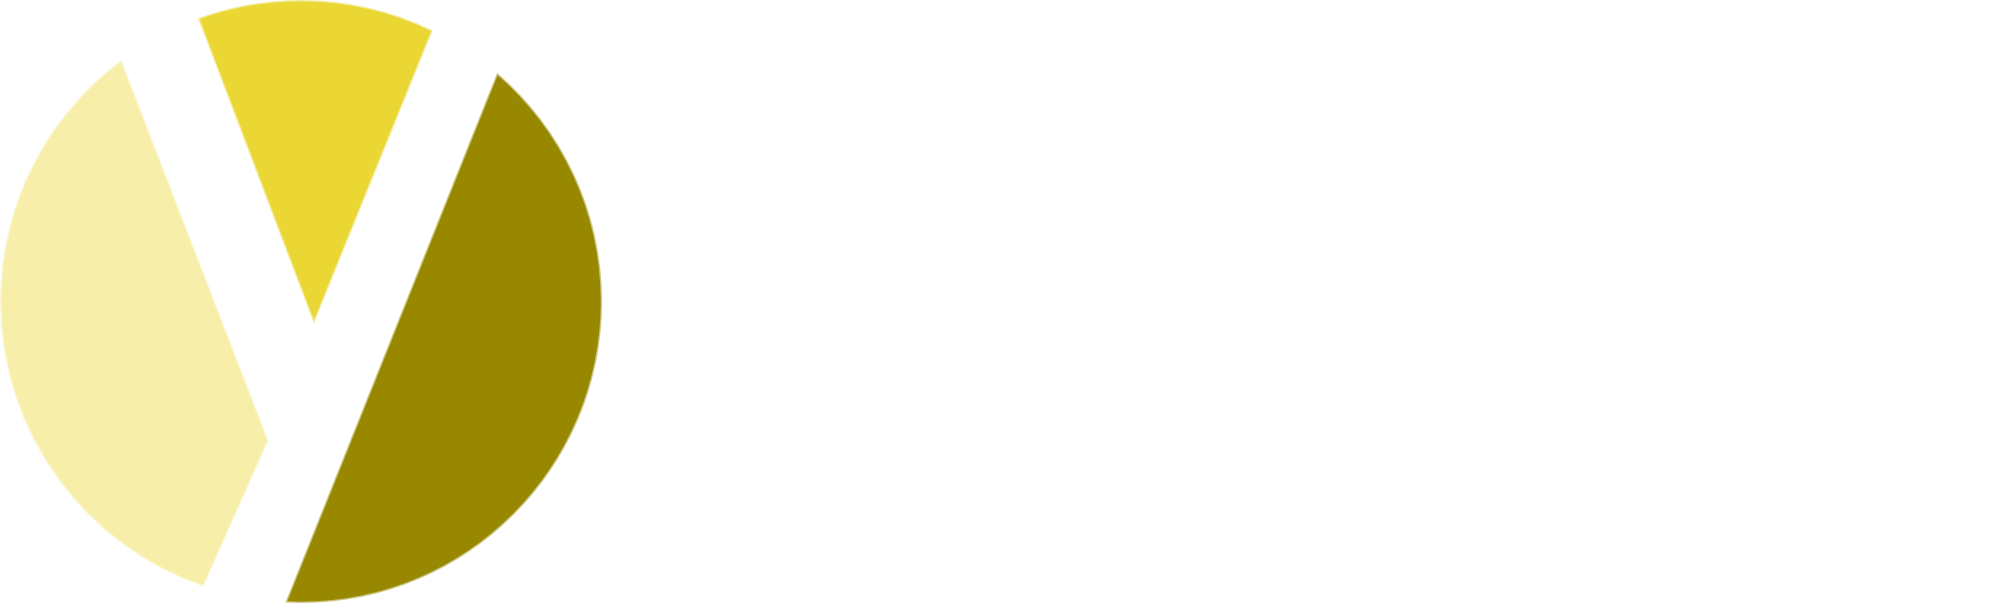 YEBDRI Amine